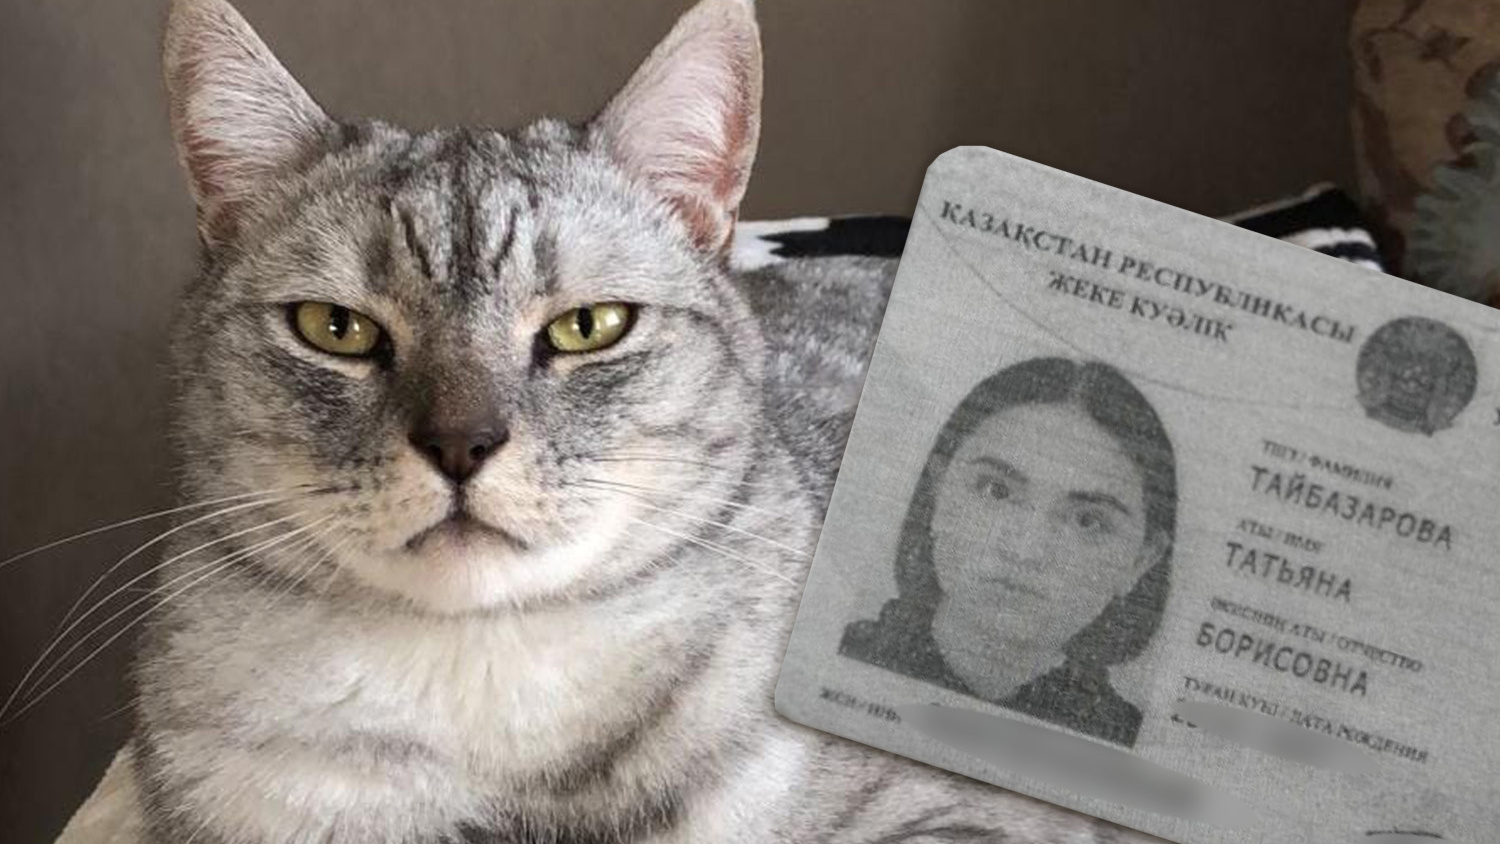 «Она — маньяк»: в ветеринарной клинике сотрудница убила кота Симбу — она ввела ему 4 смертельных укола и фотографировала труп